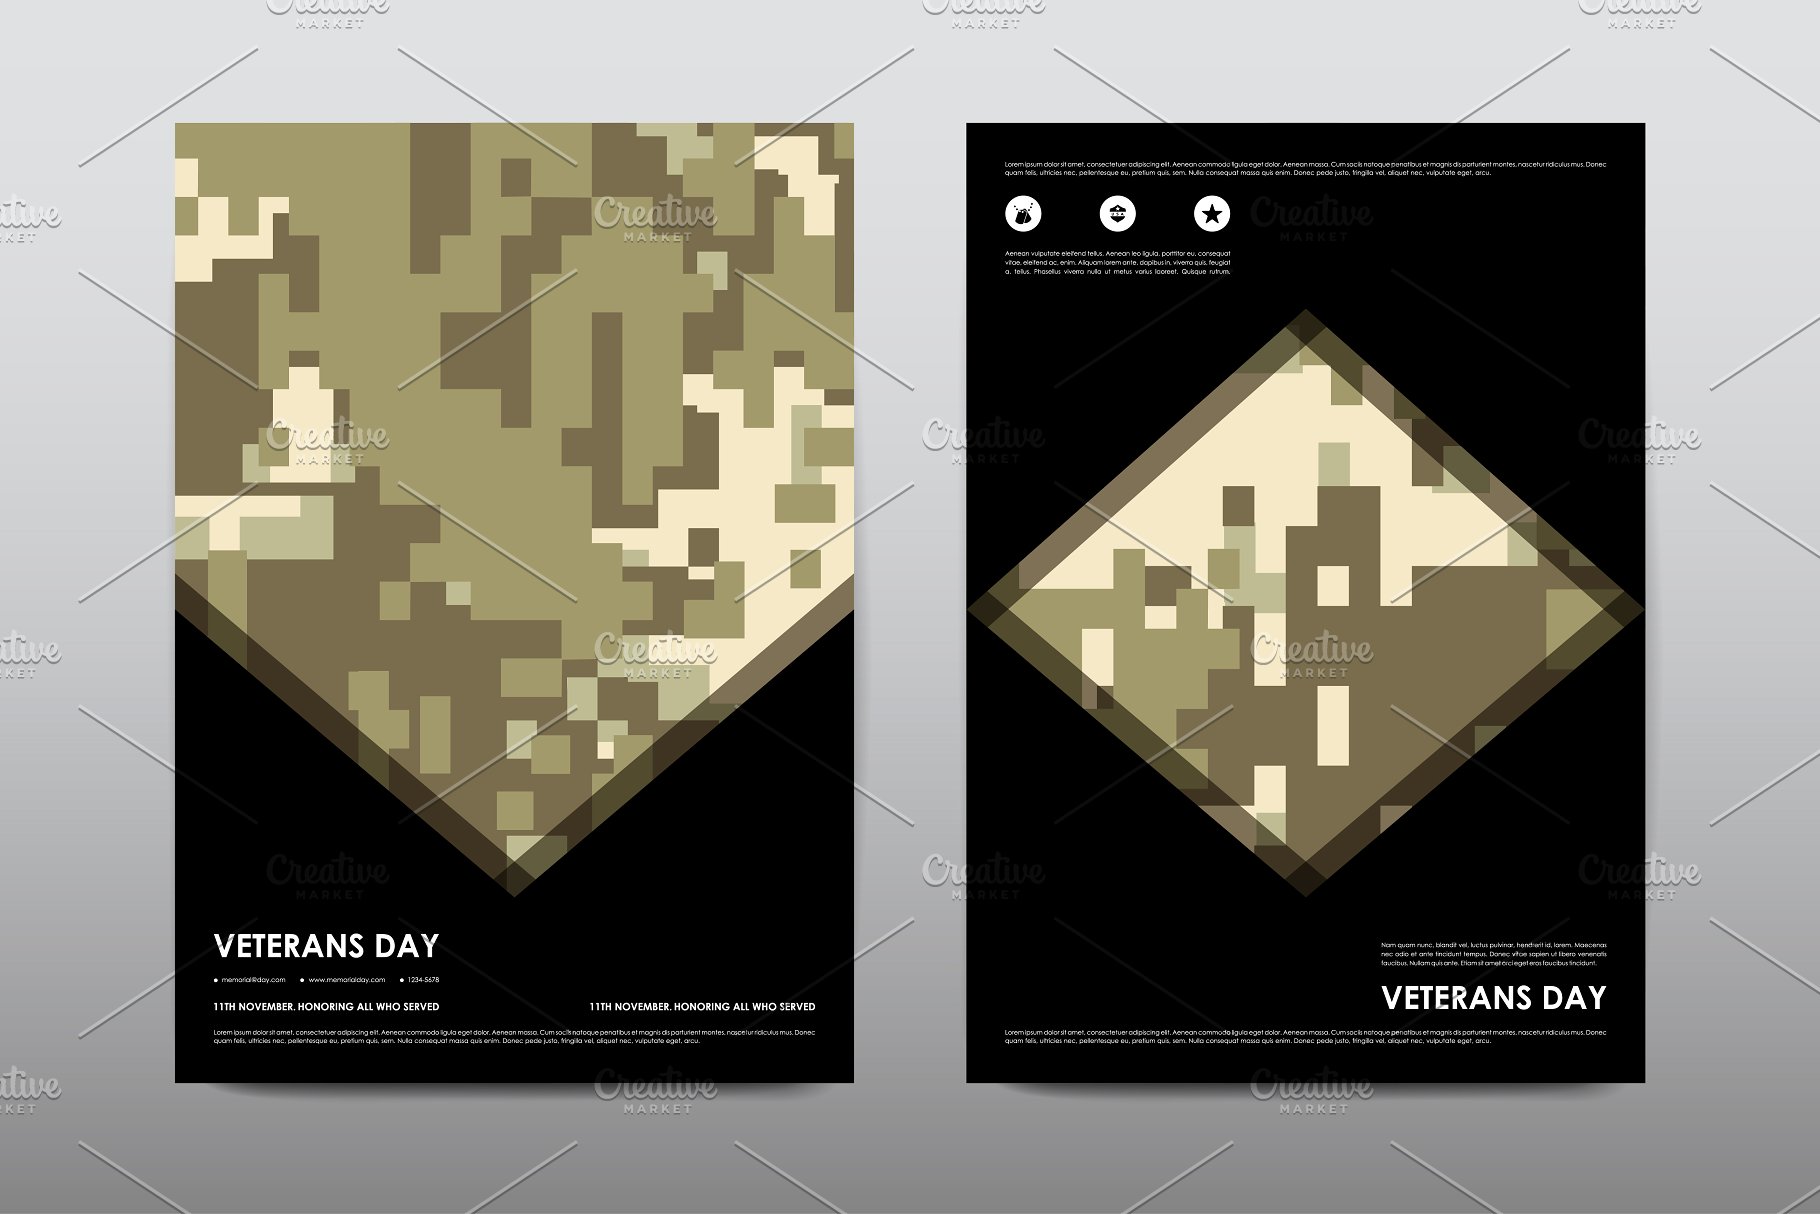 40+老兵节军人宣传小册模板 Veteran’s Day Brochures Bundle插图(9)